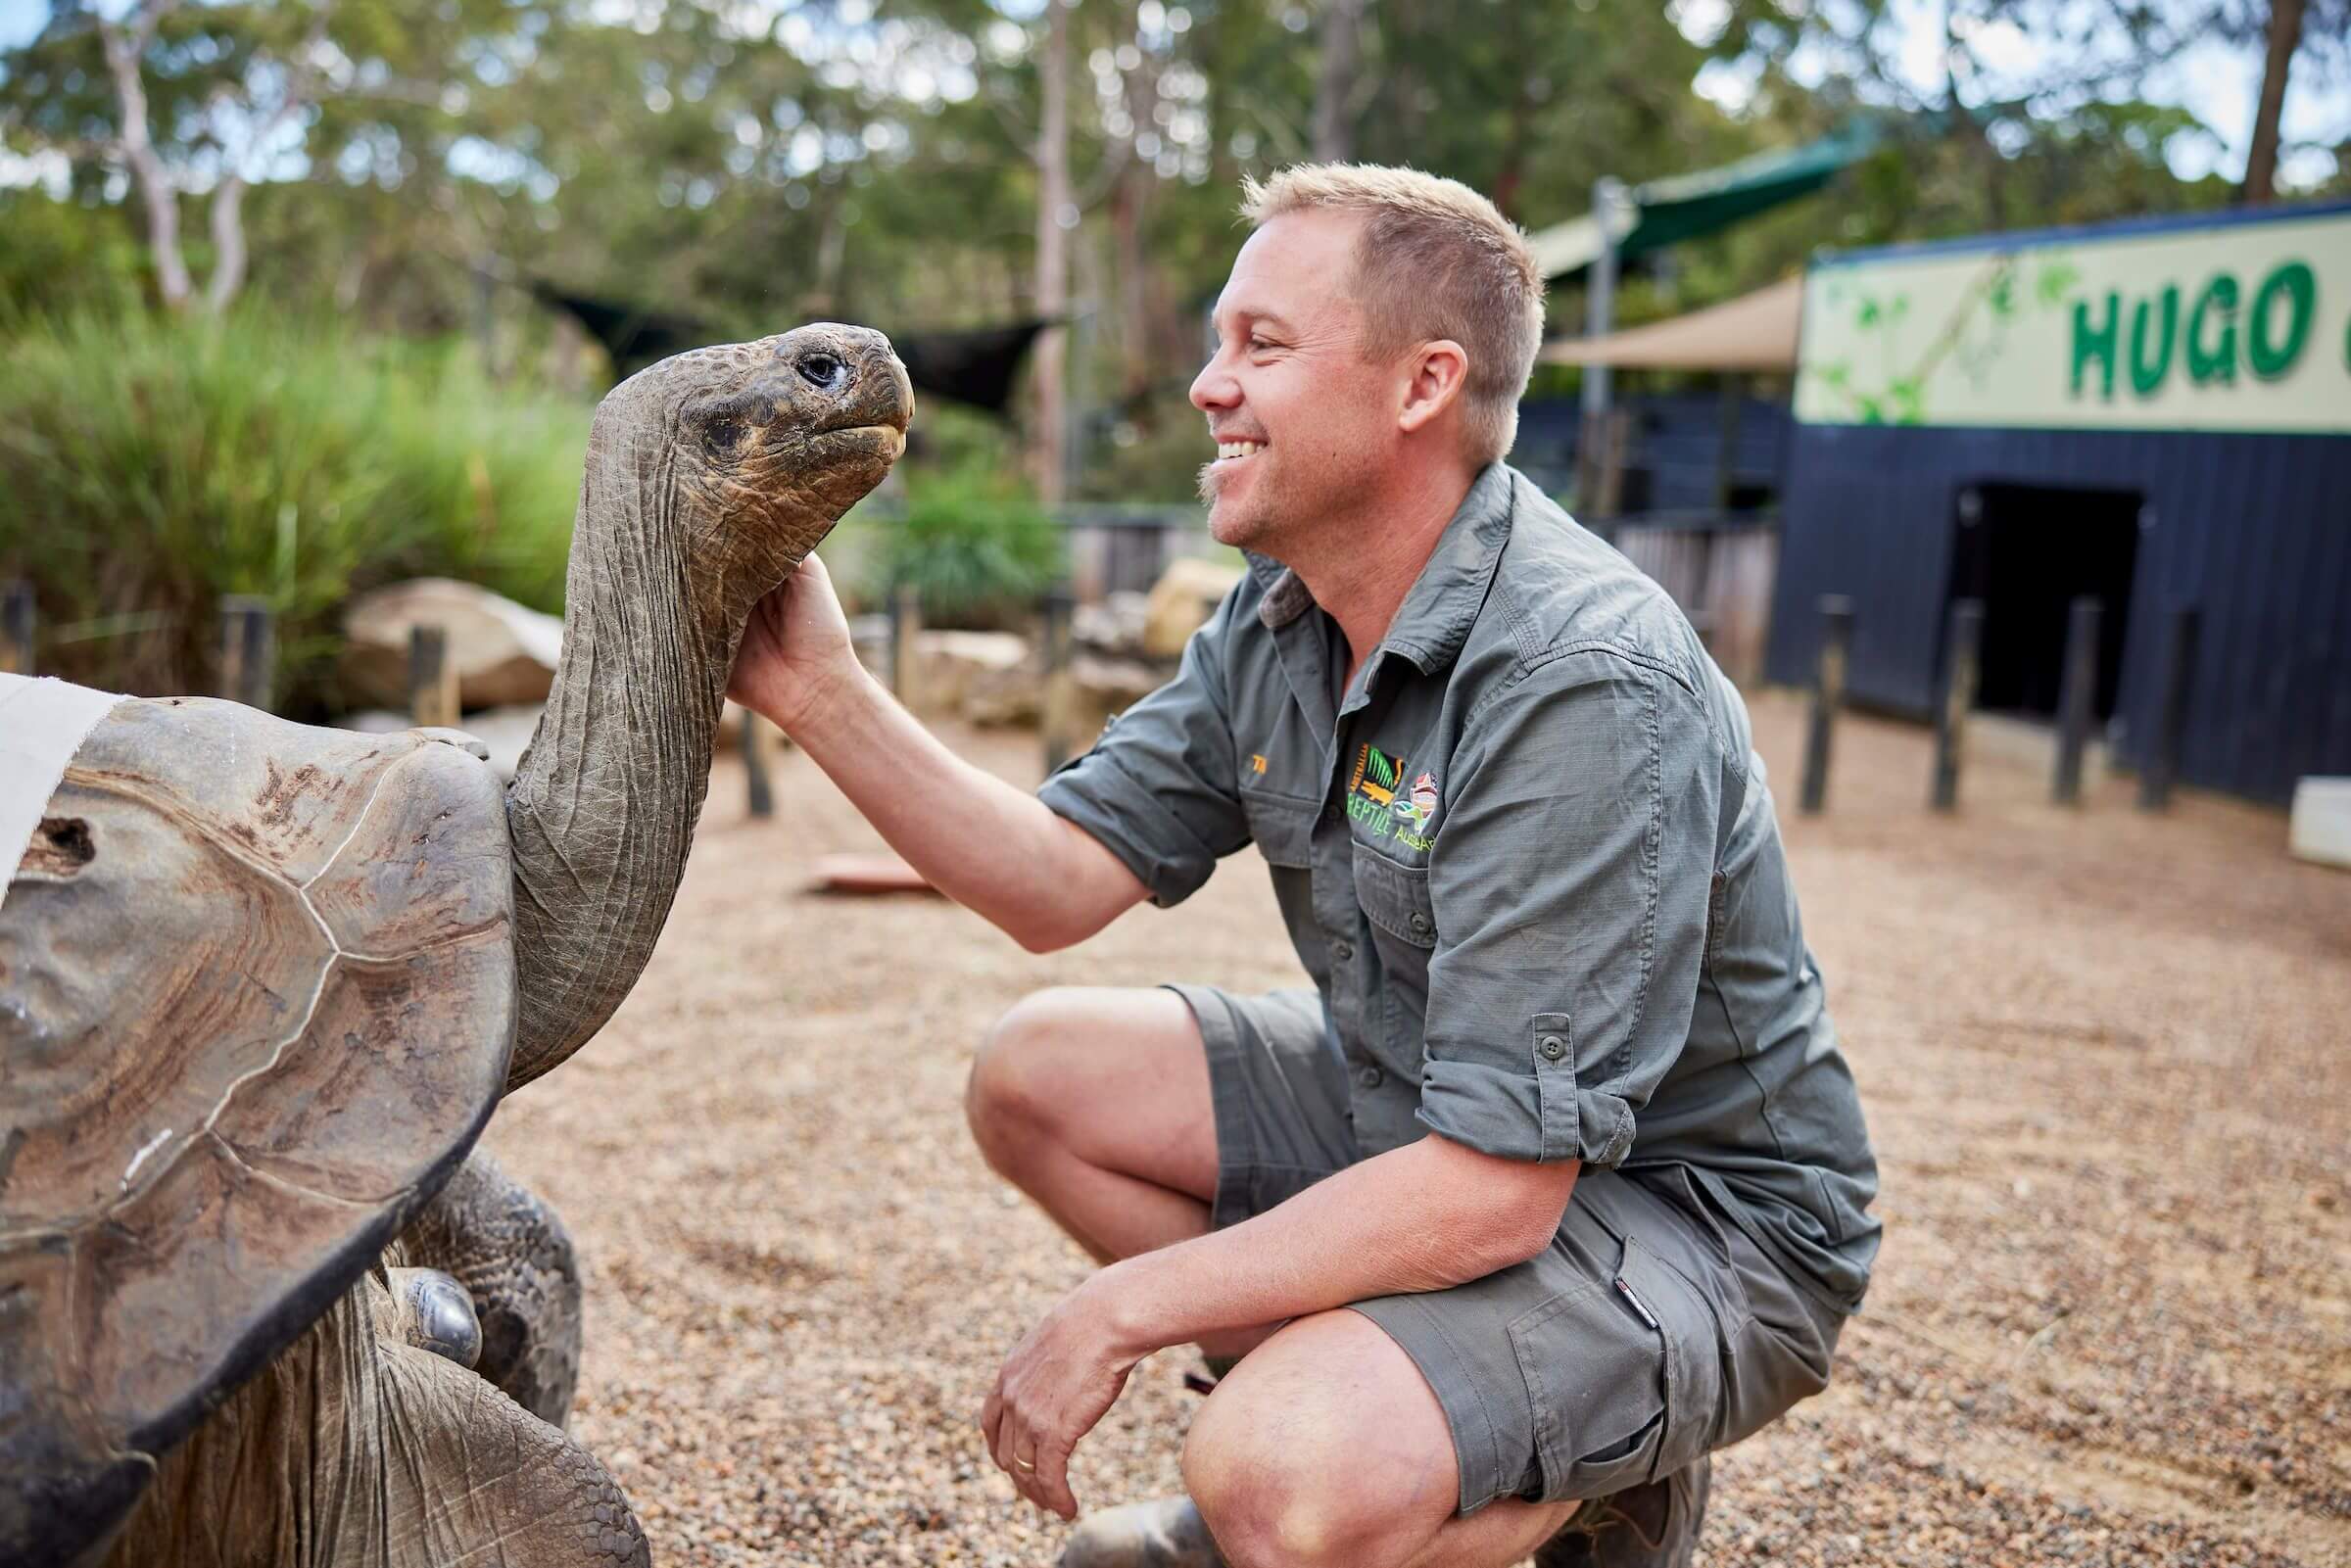 ranger patting giant galapagos tortoise called Huge